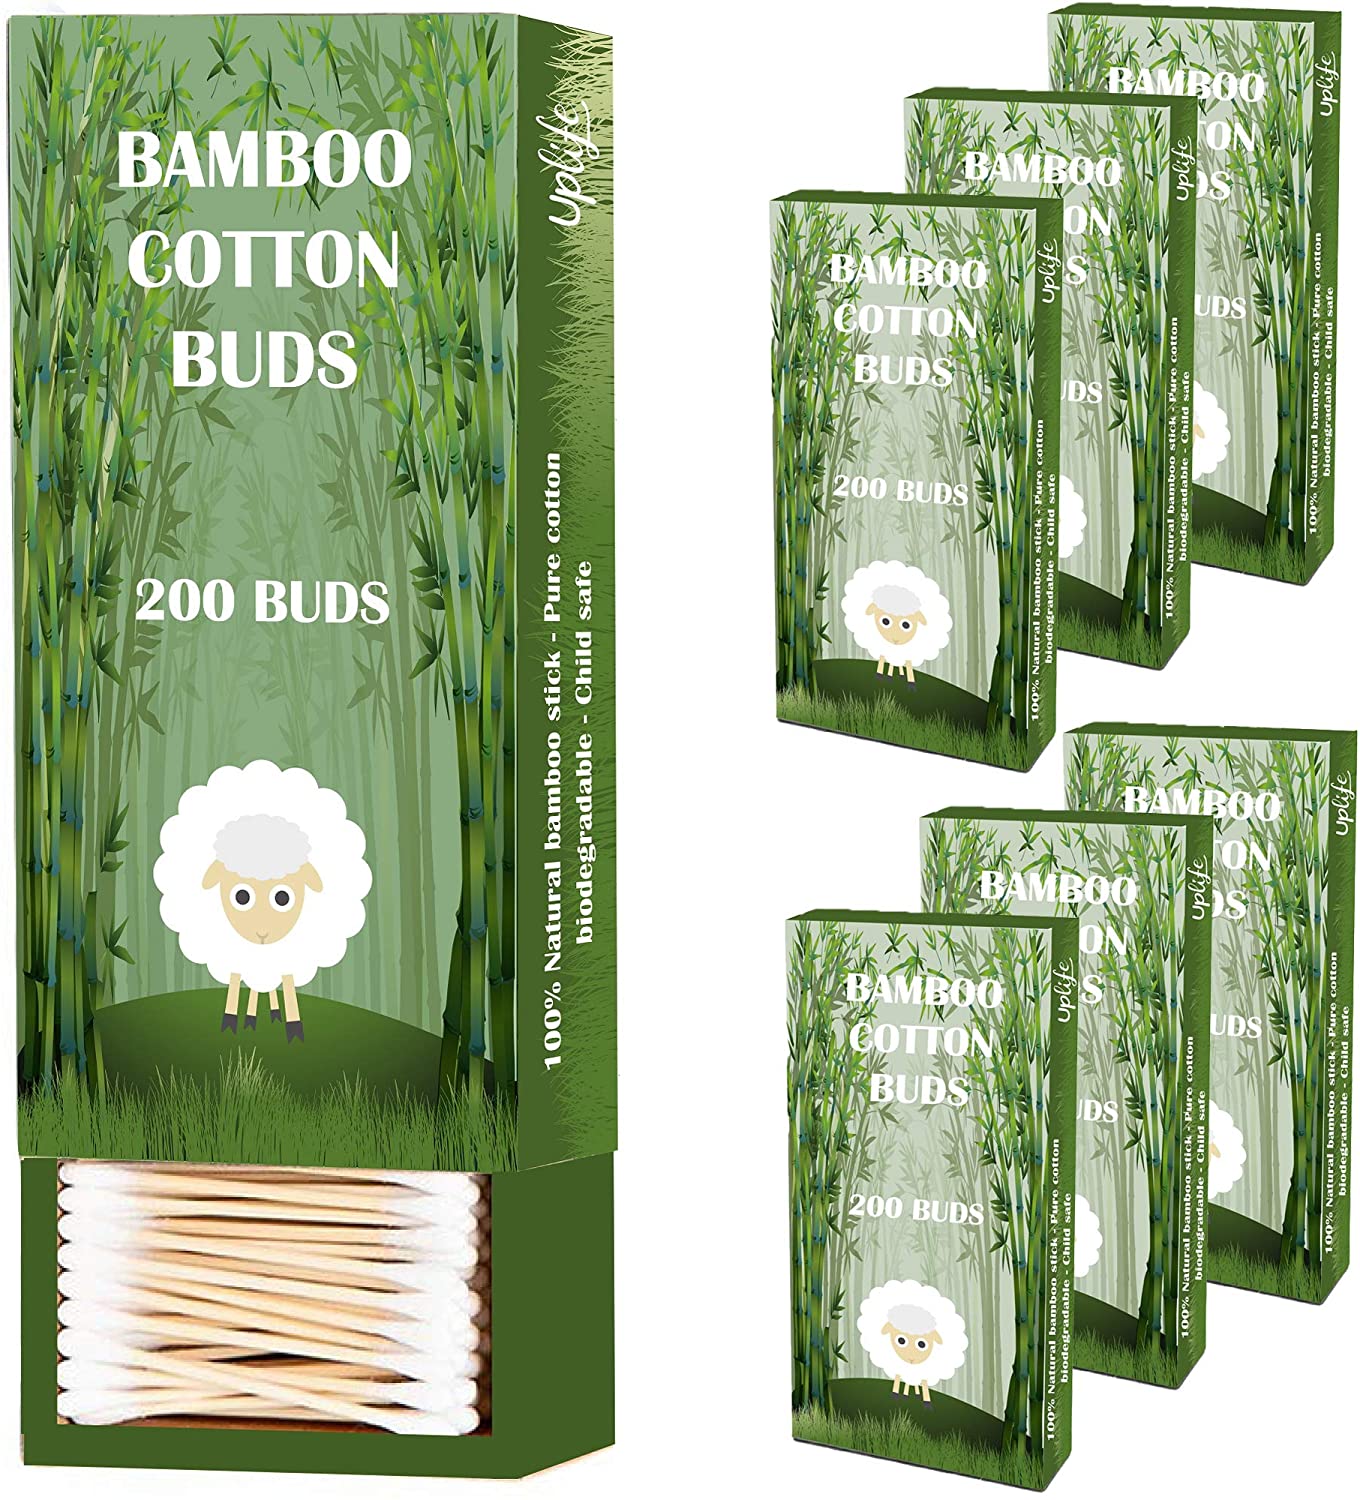 Fete Coton Tige Bambou Bte 100